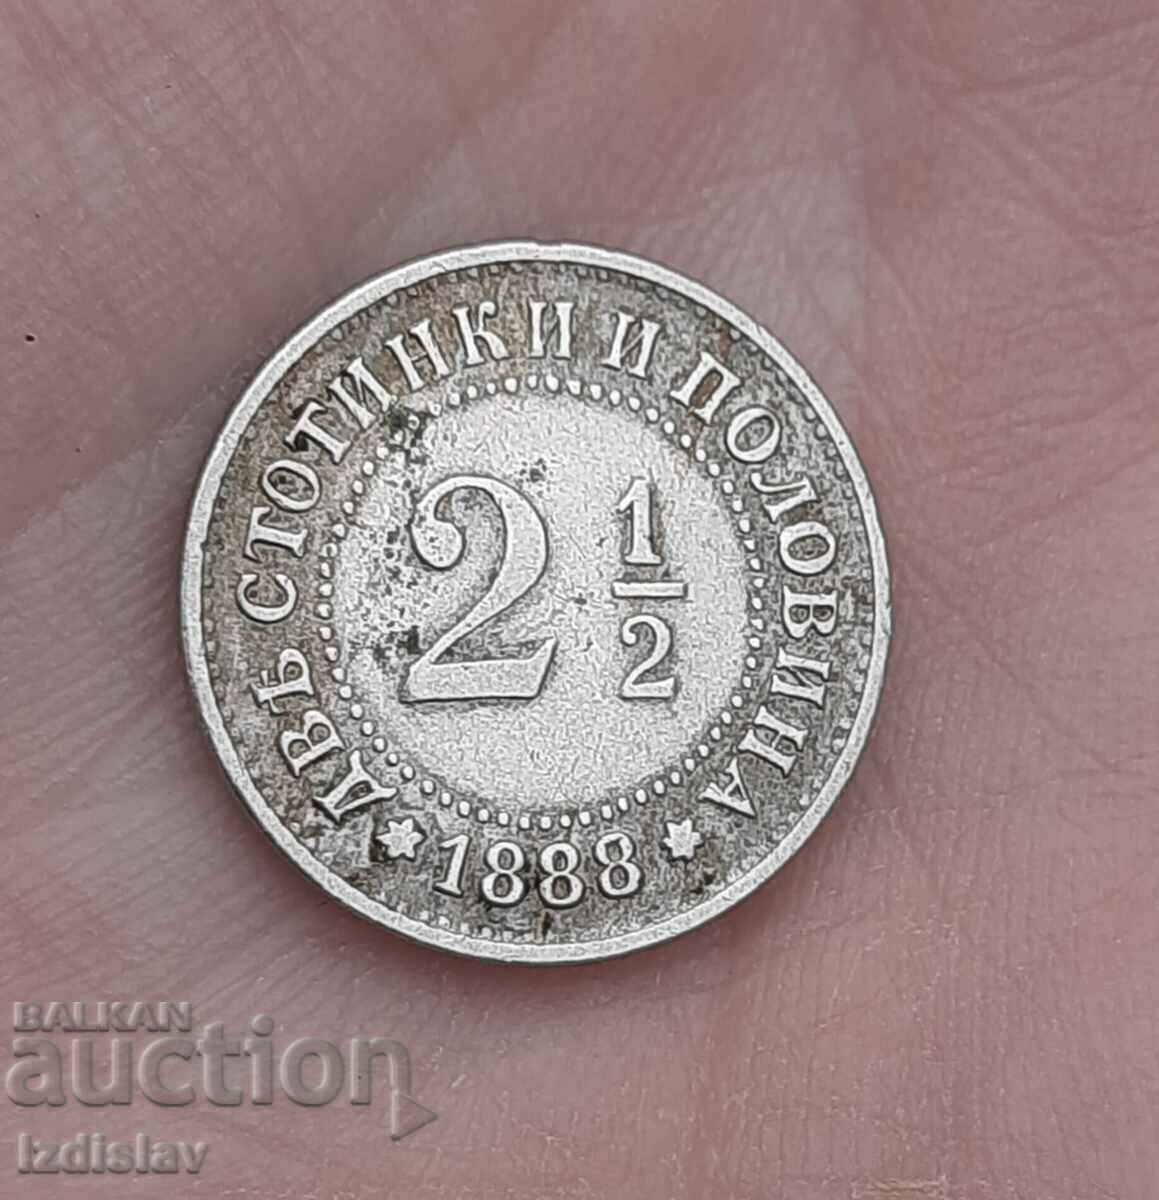 1888 2 και 1/2 σεντ